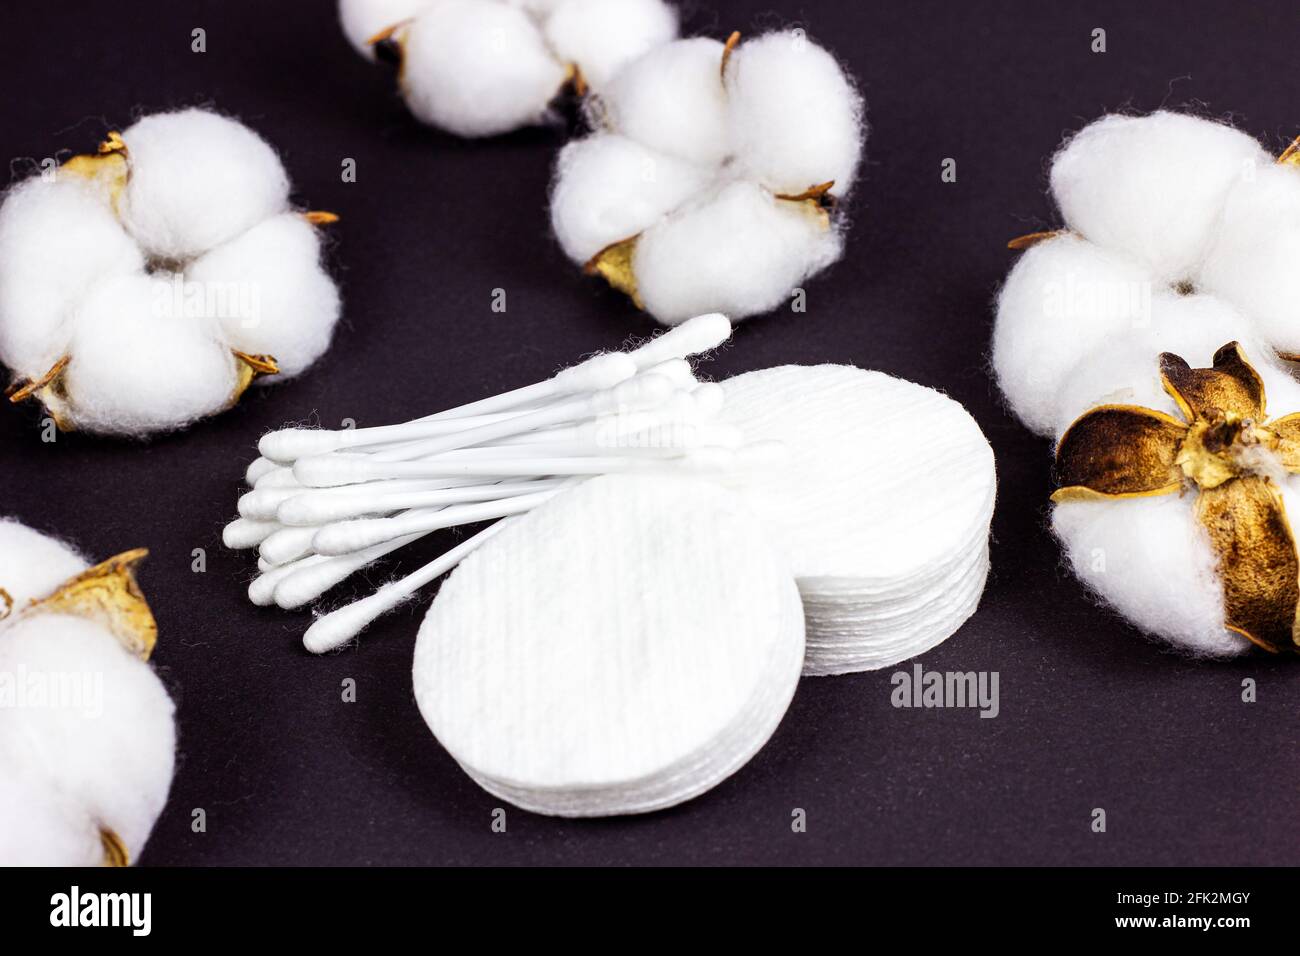 Tamponi e bastoncini bianchi in morbido cotone per l'igiene e la salute su sfondo nero. Foto Stock